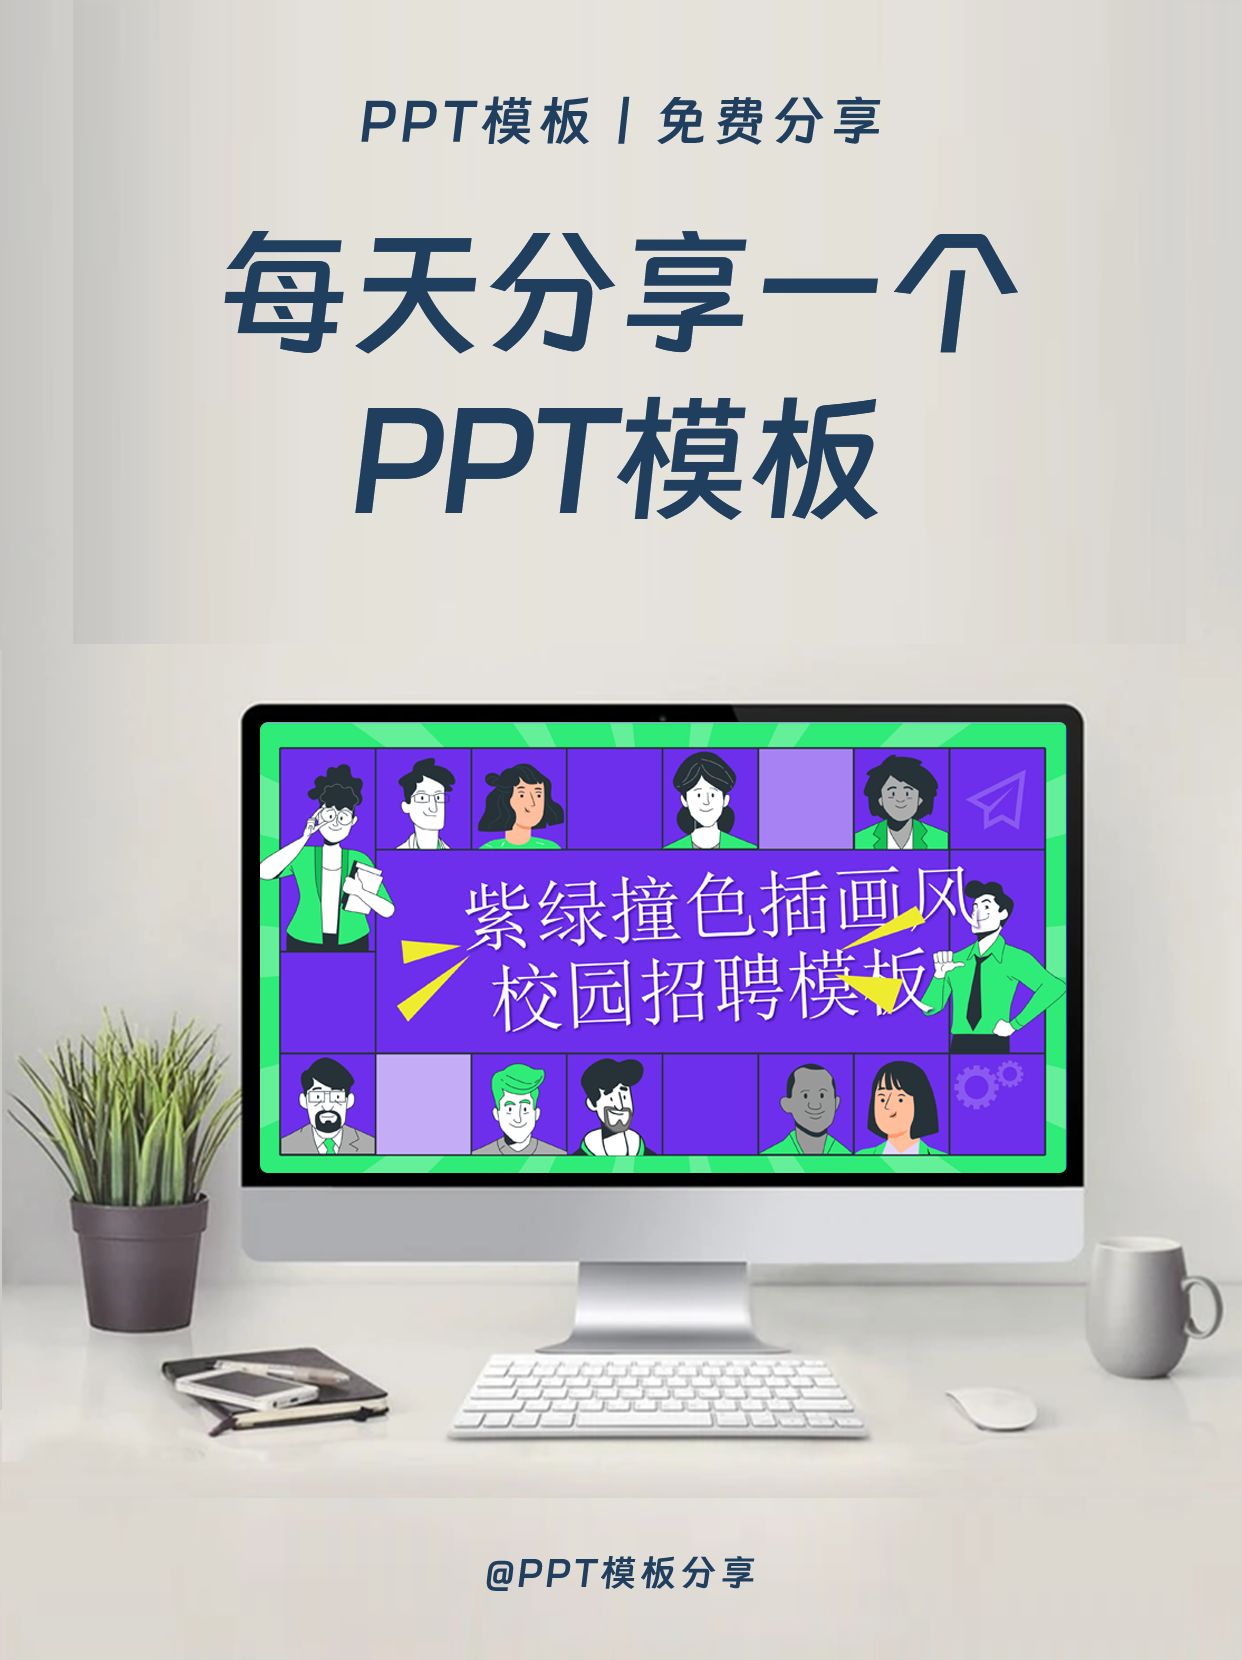 紫绿撞色插画风校园招聘PPT模板